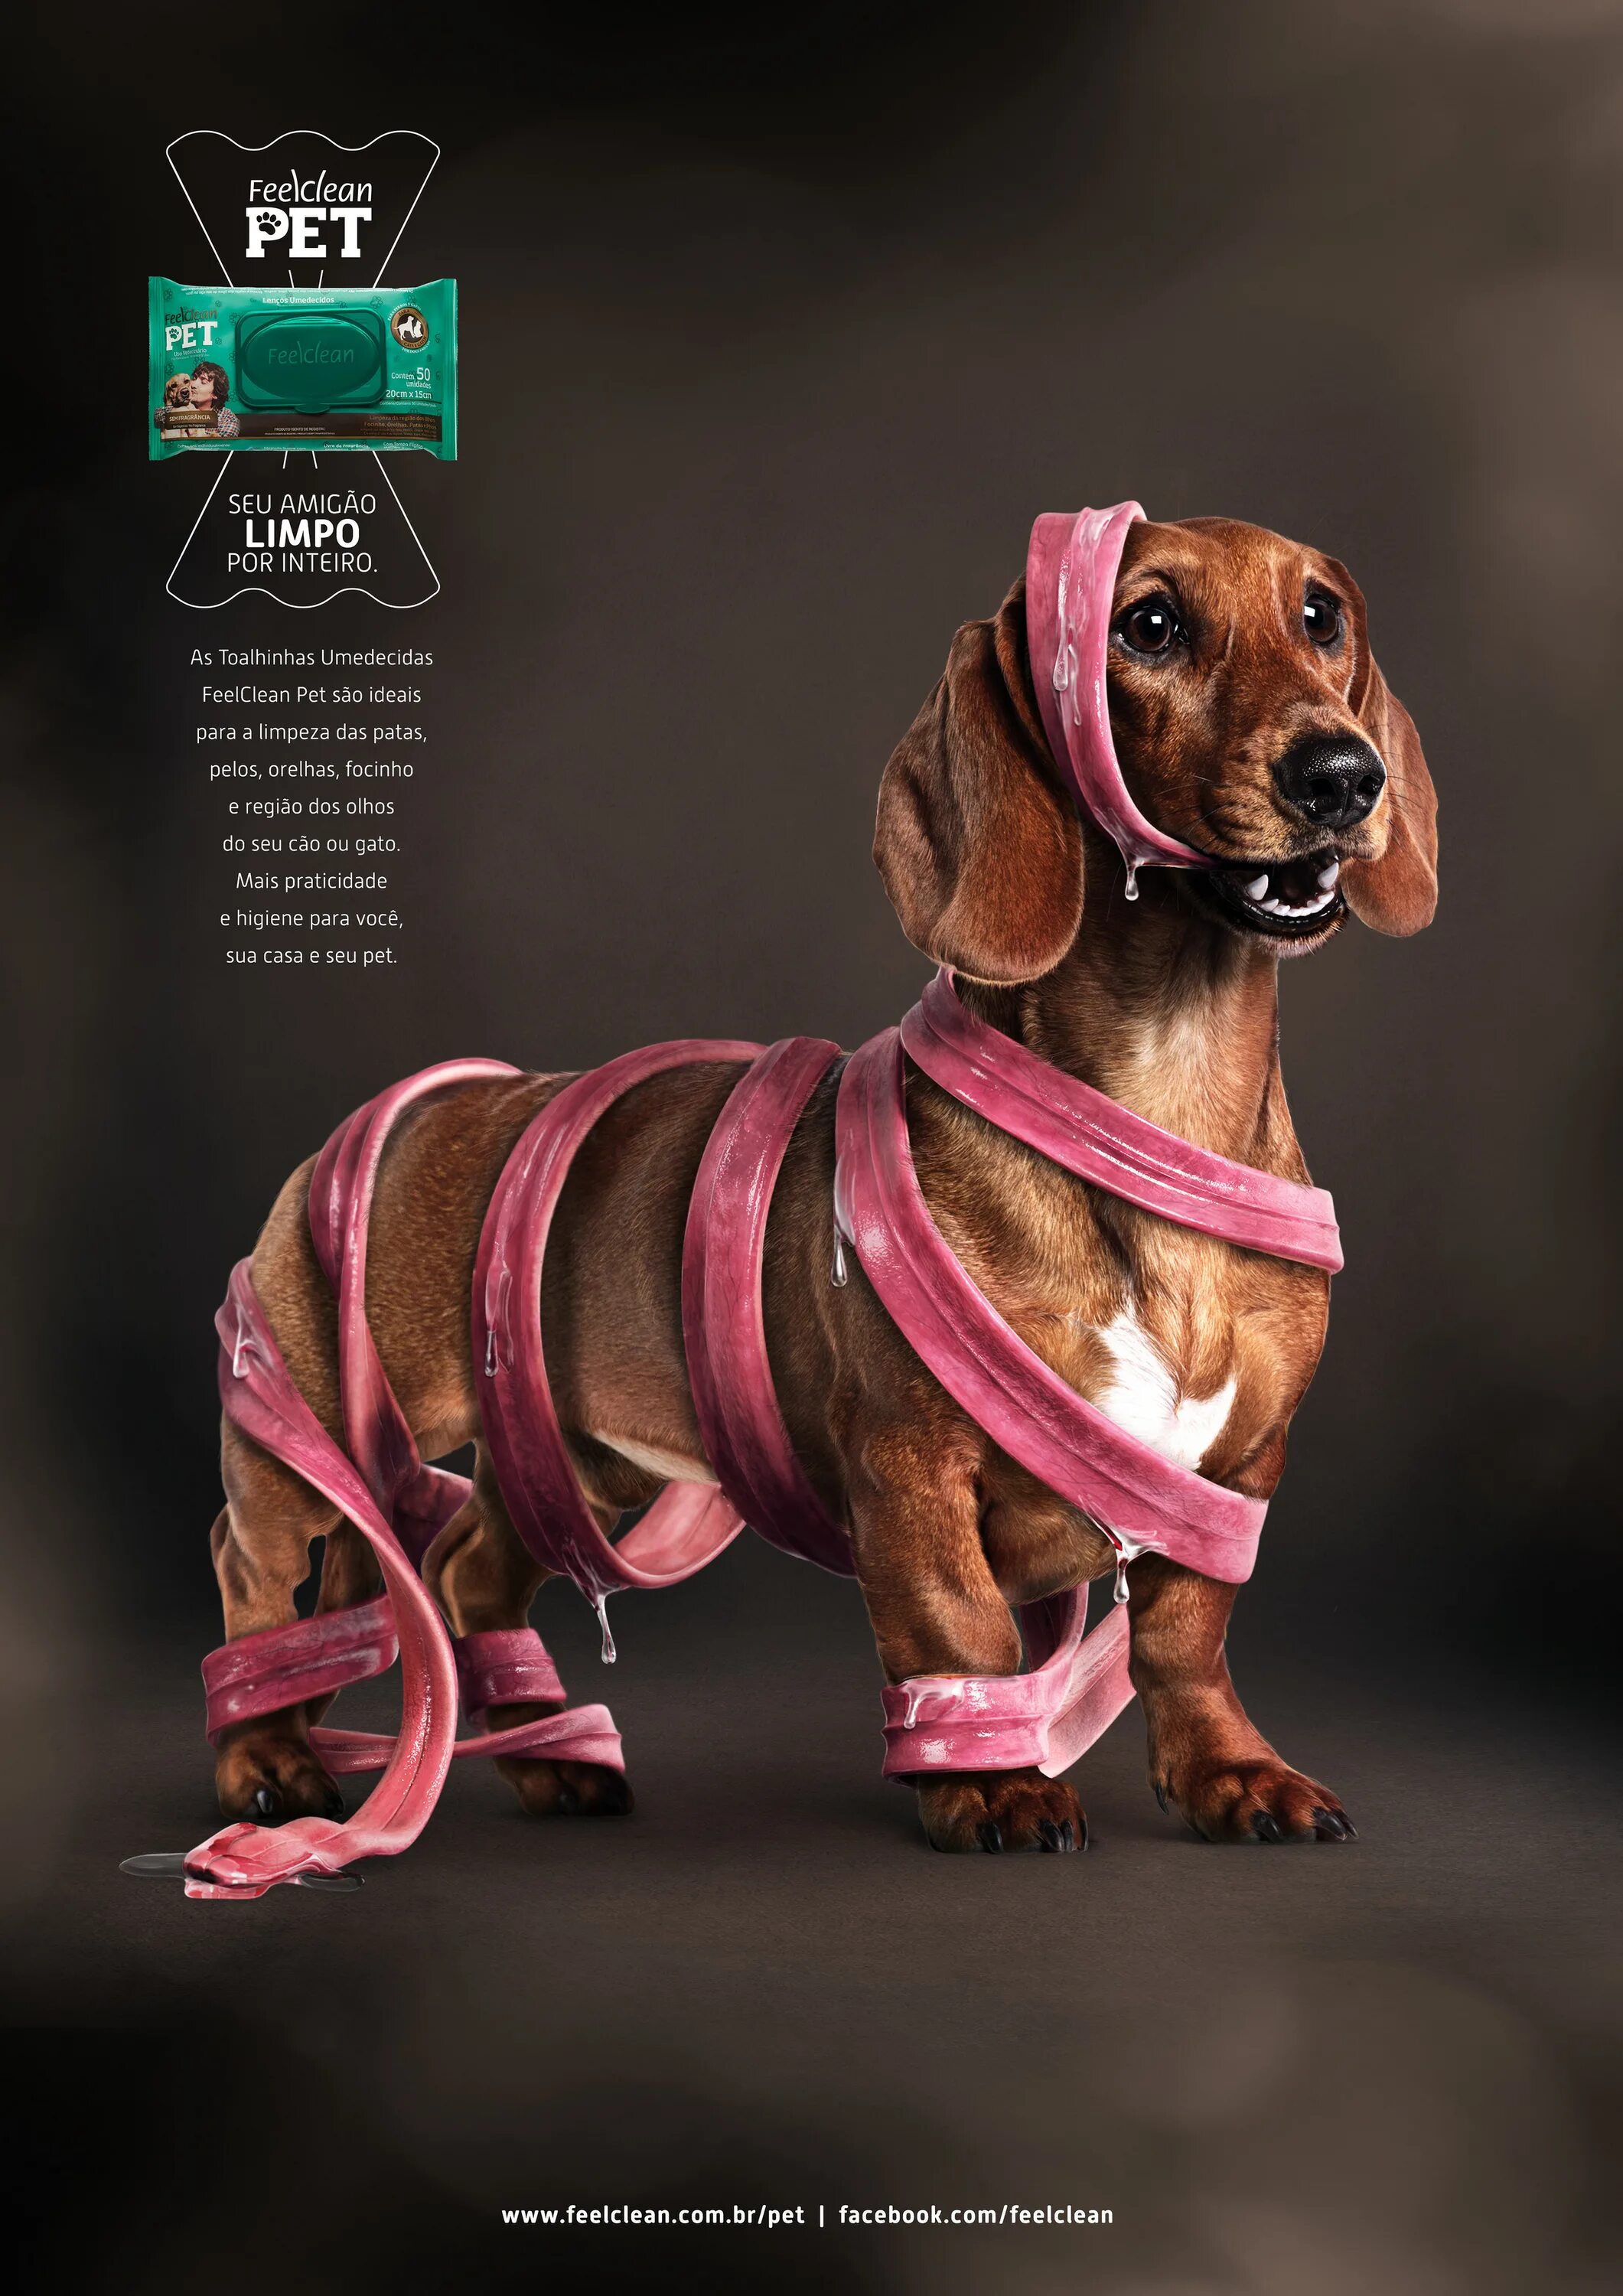 Креативная реклама корма для собак. Креативное животные реклама. Креативные домашние животные. Собака креатив.